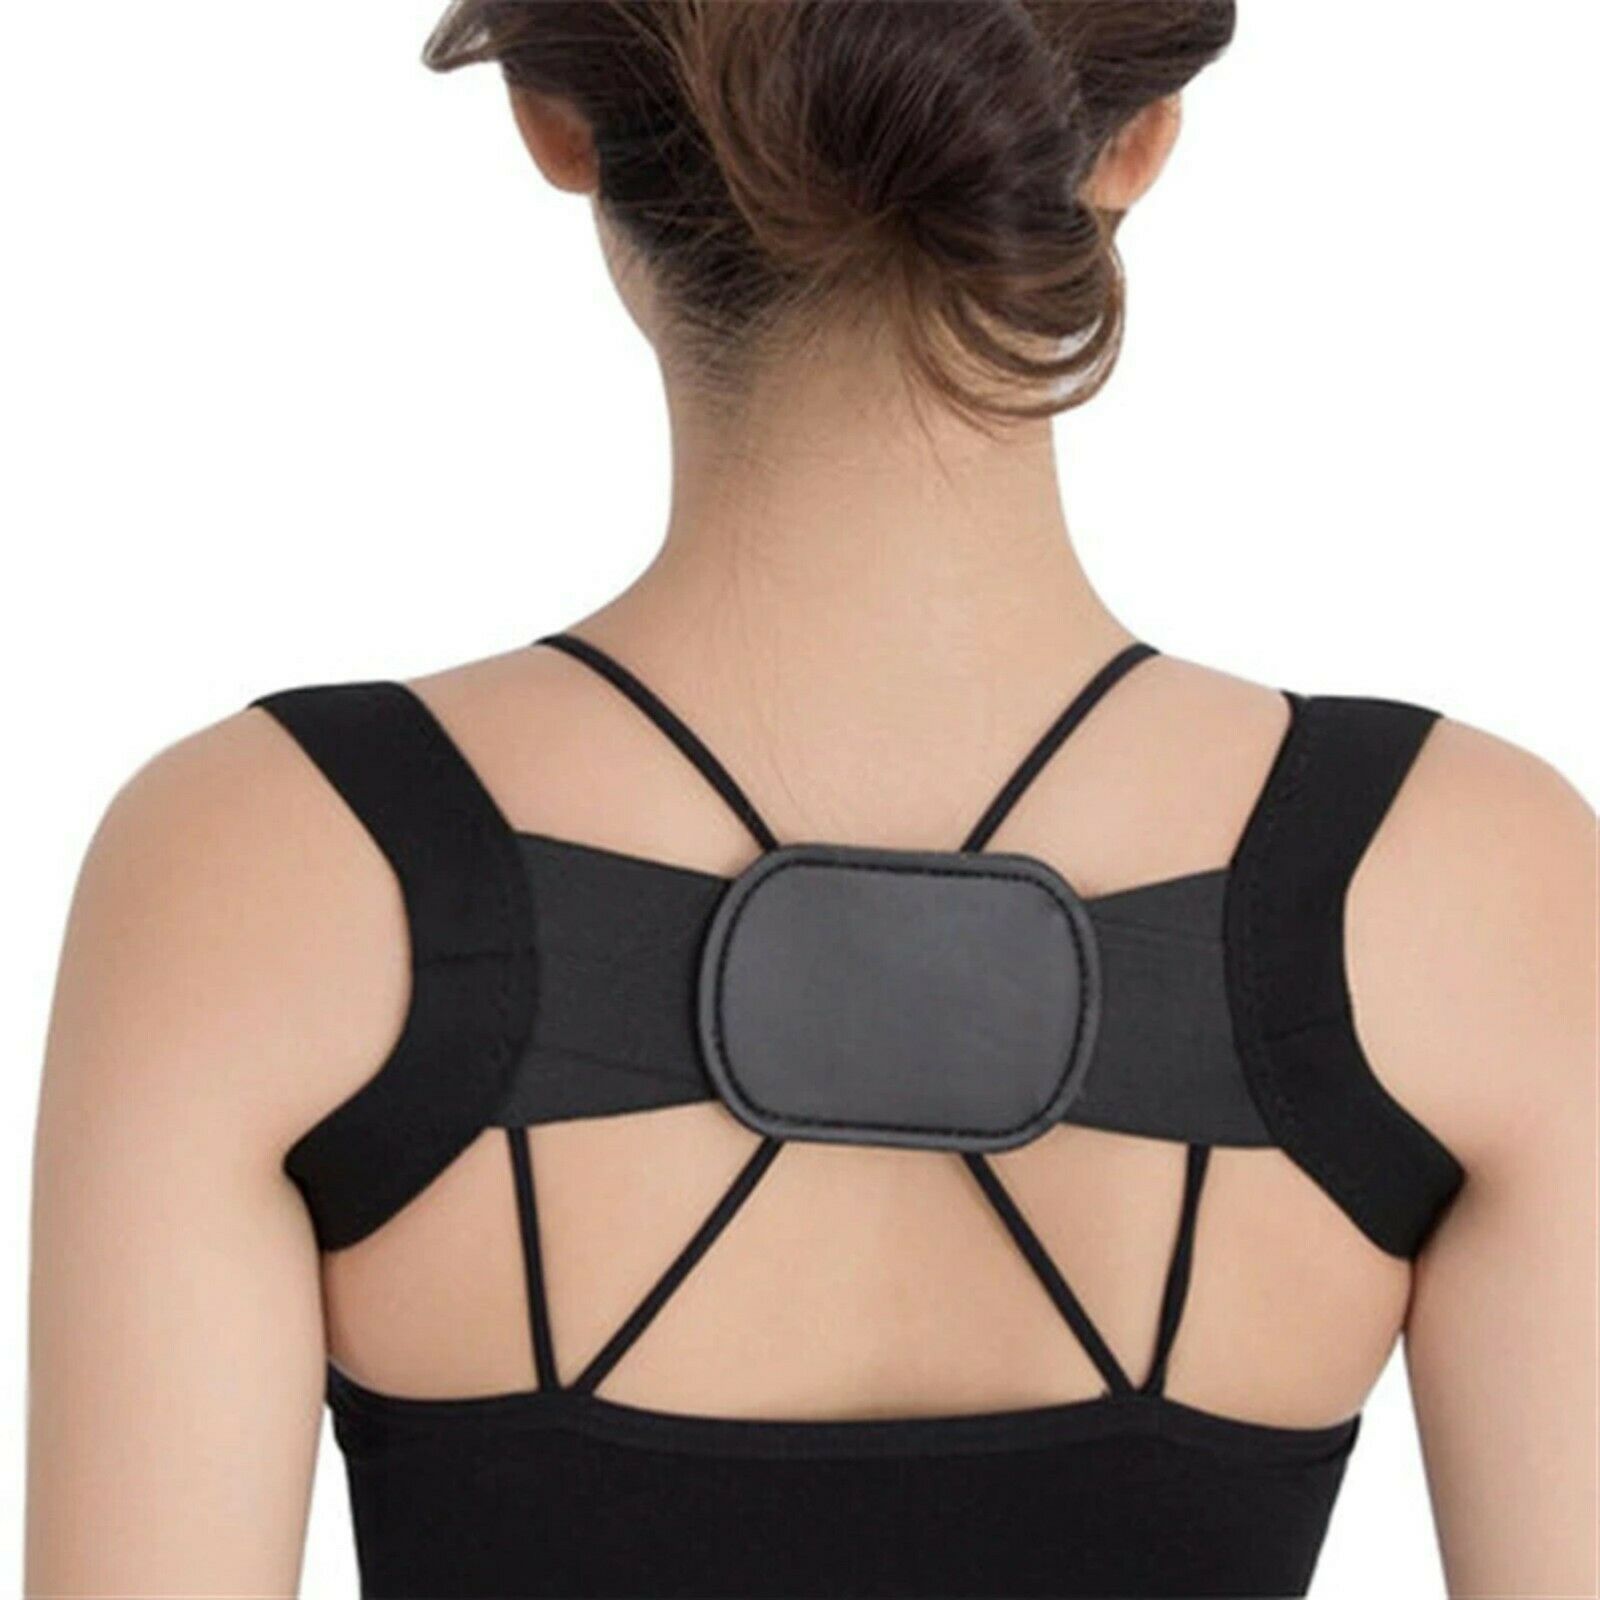 Back Support Posture Correction Adjustable Brace Support Belt Adjustable Back Posture Back Shoulder Chest Corrector Vest Posture